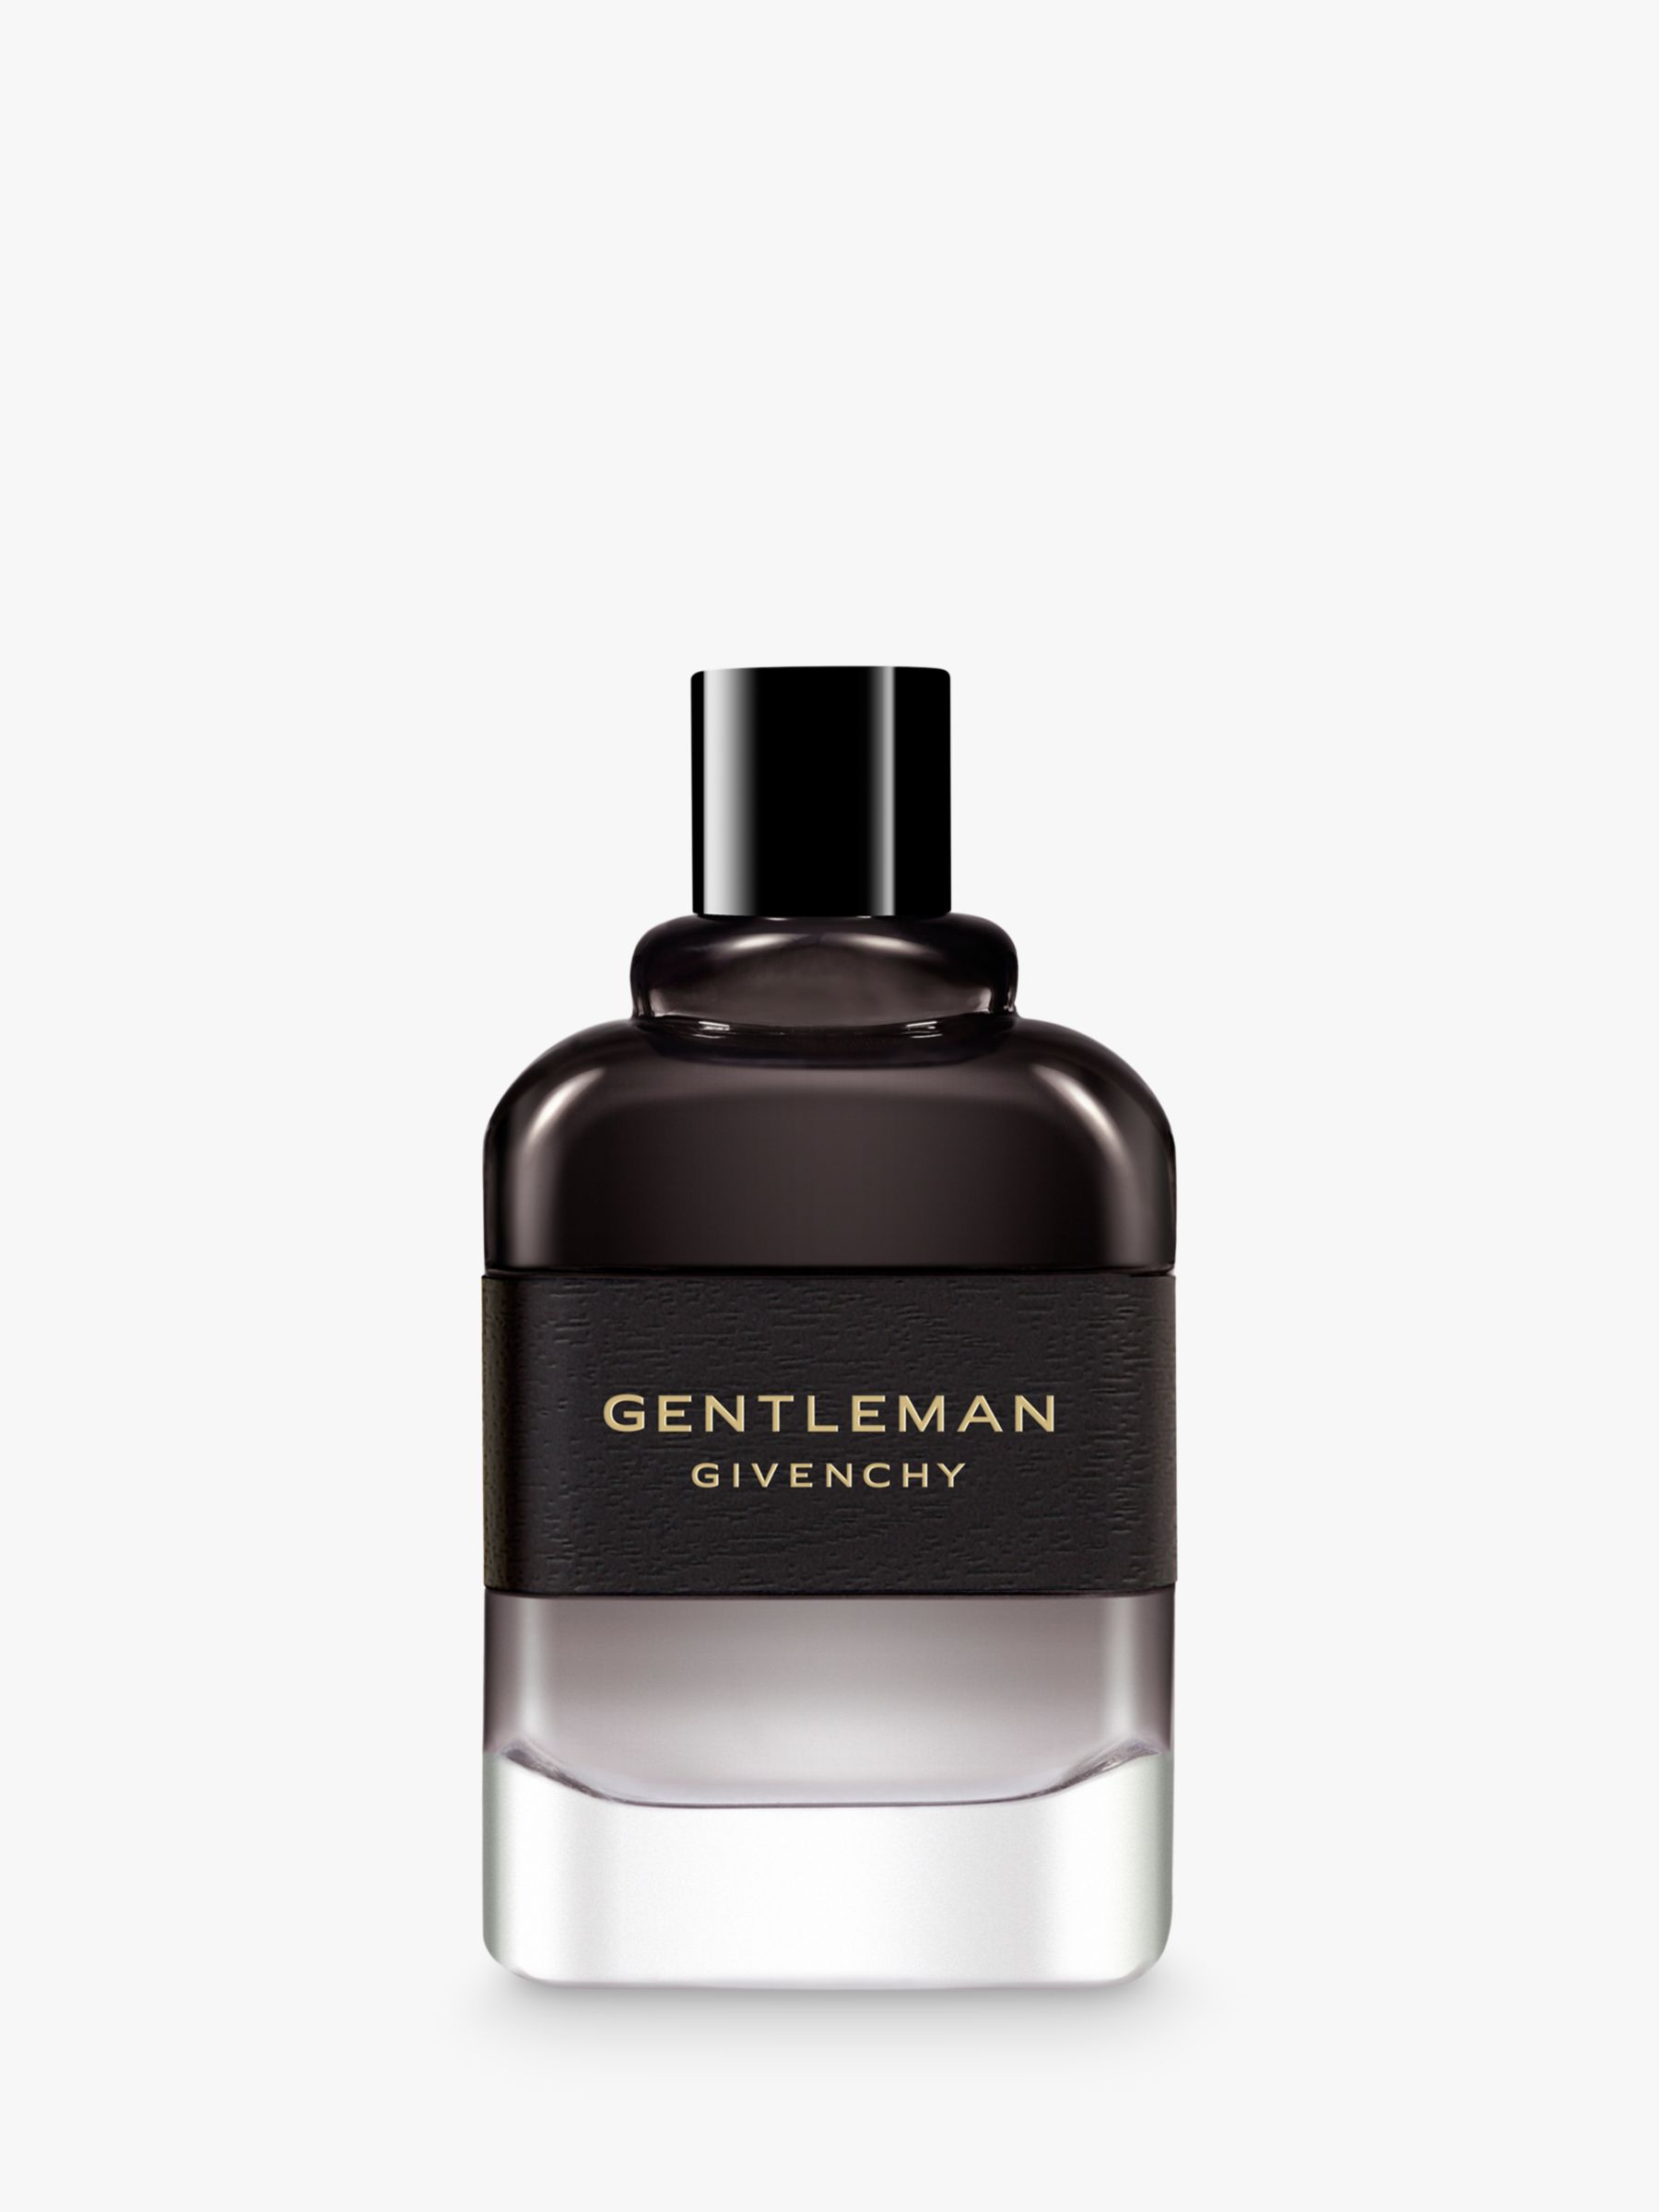 Givenchy Gentleman Eau de Parfum Boisée, 100ml at John Lewis & Partners